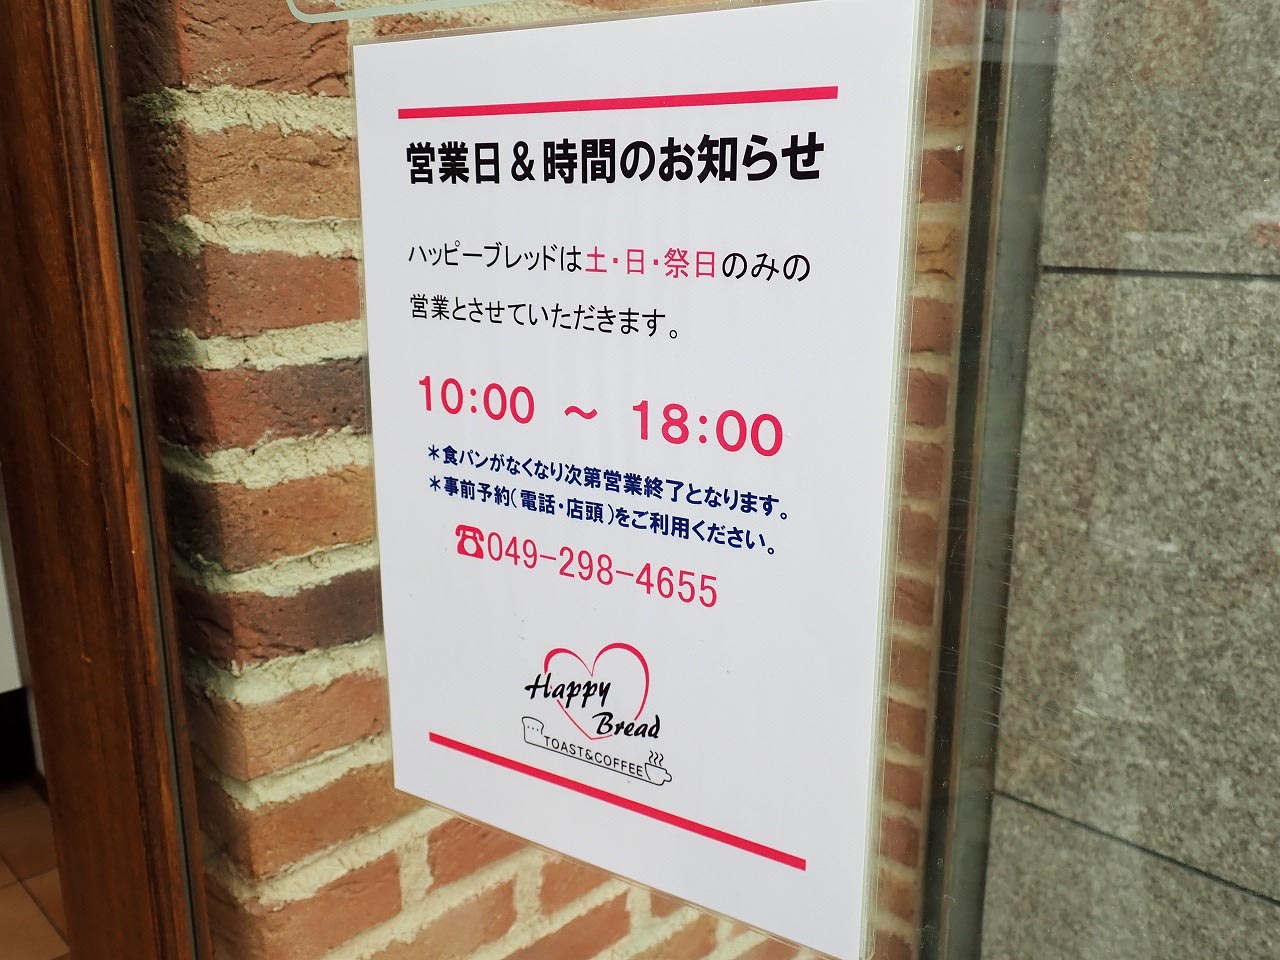 2022年9月に営業を再開した『Happy Bread 小江戸川越店』